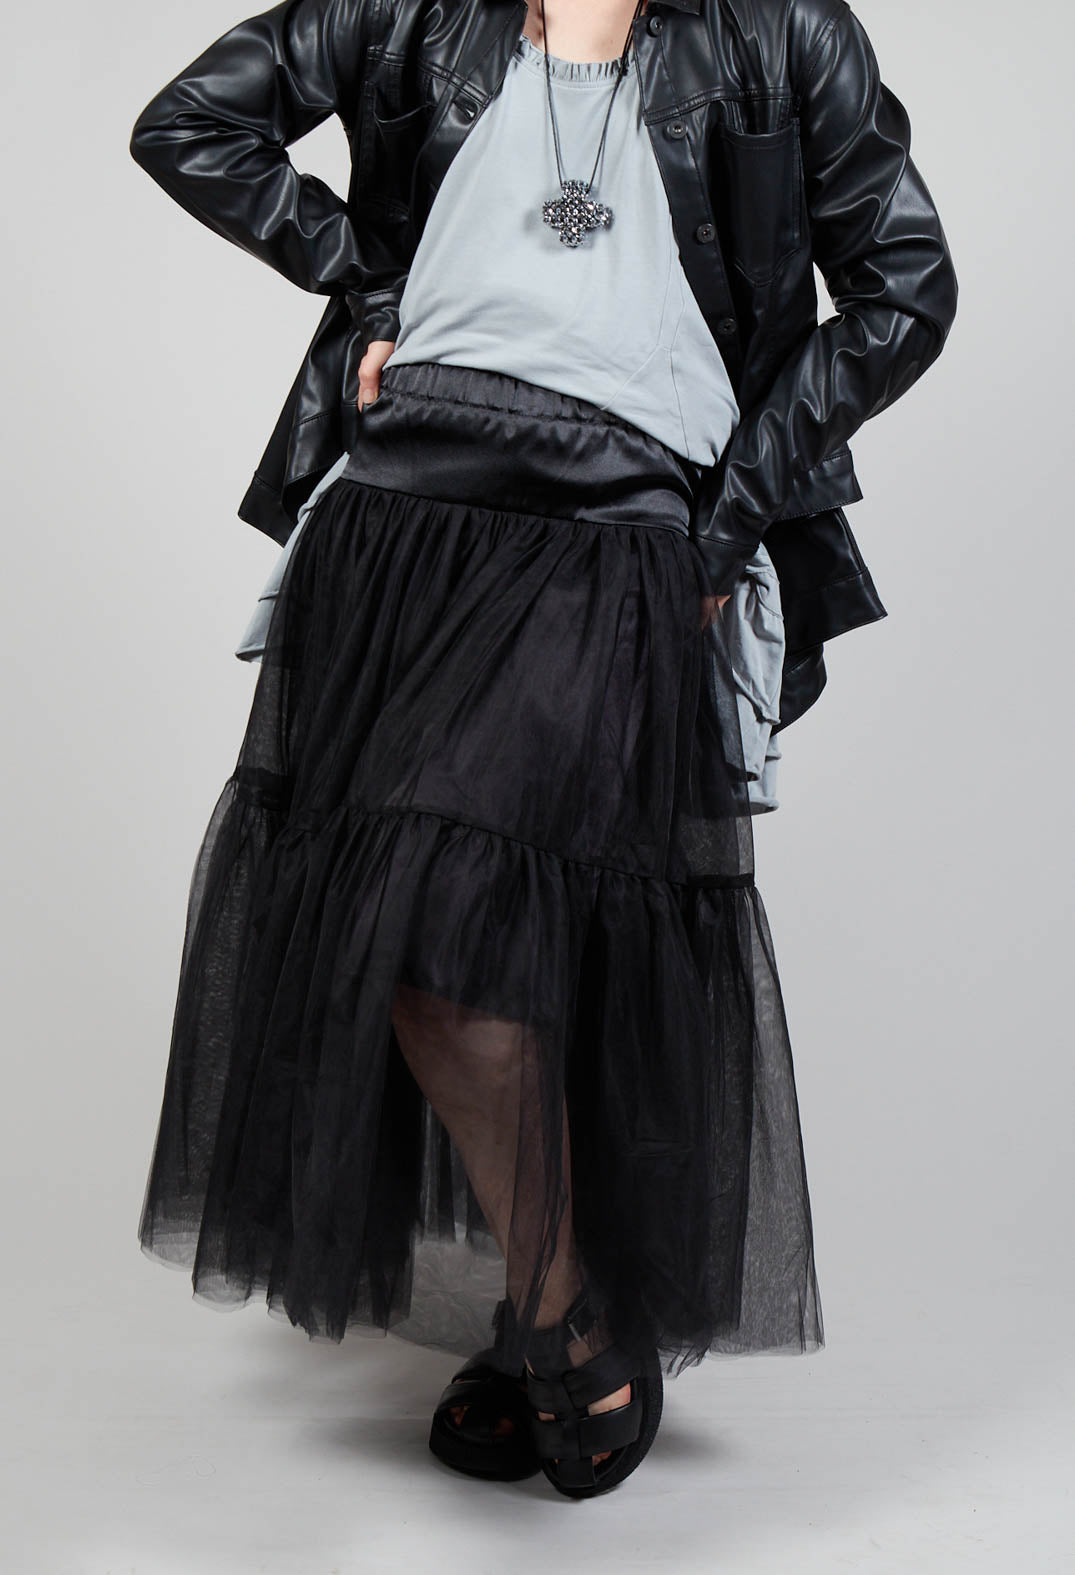 TuTuPlu Skirt in Black